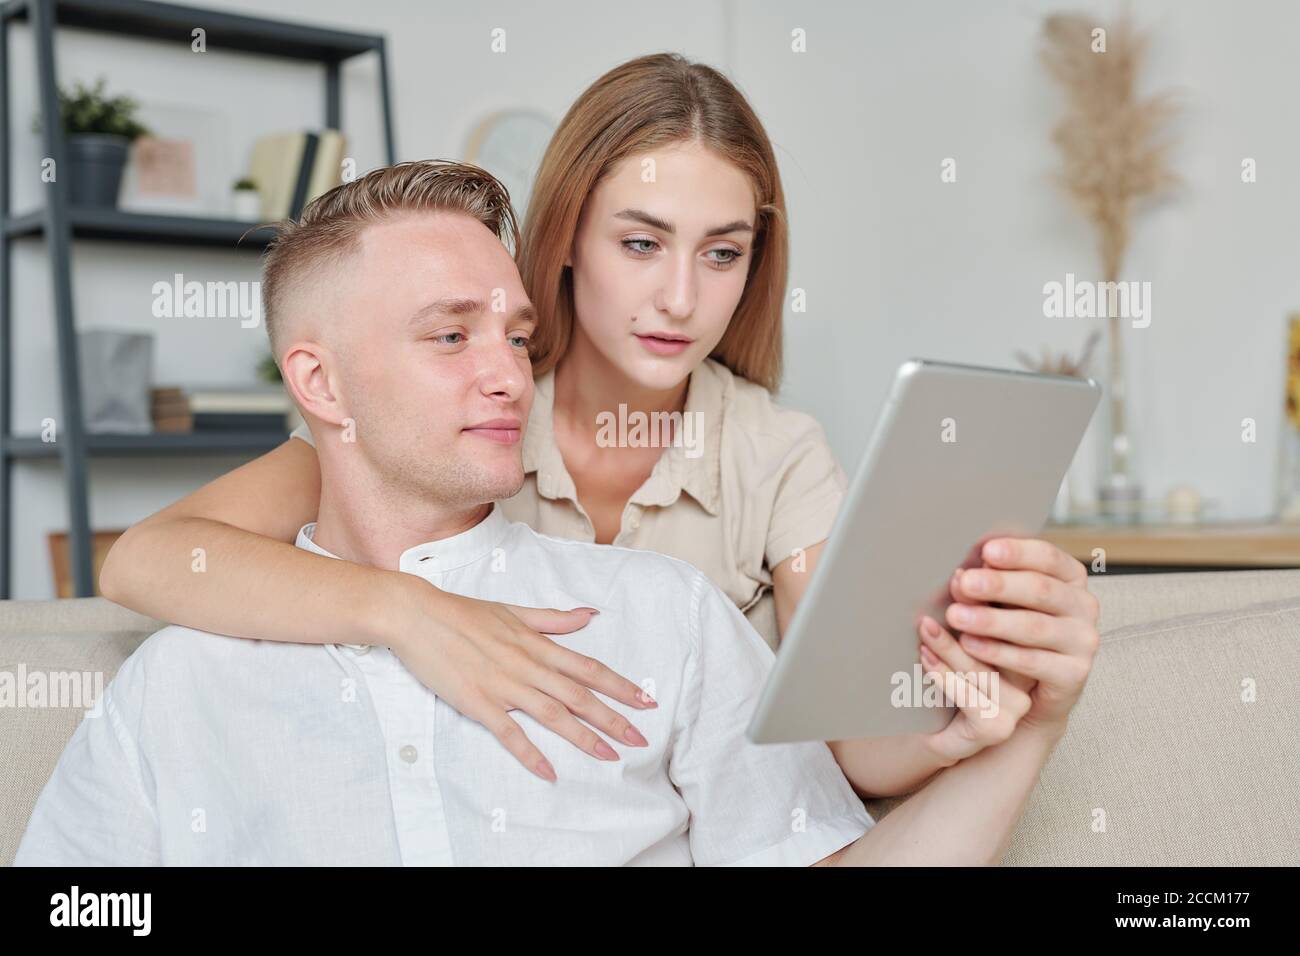 Femme affectueuse avec une tablette montrant le mari Nice habits en ligne boutique Banque D'Images